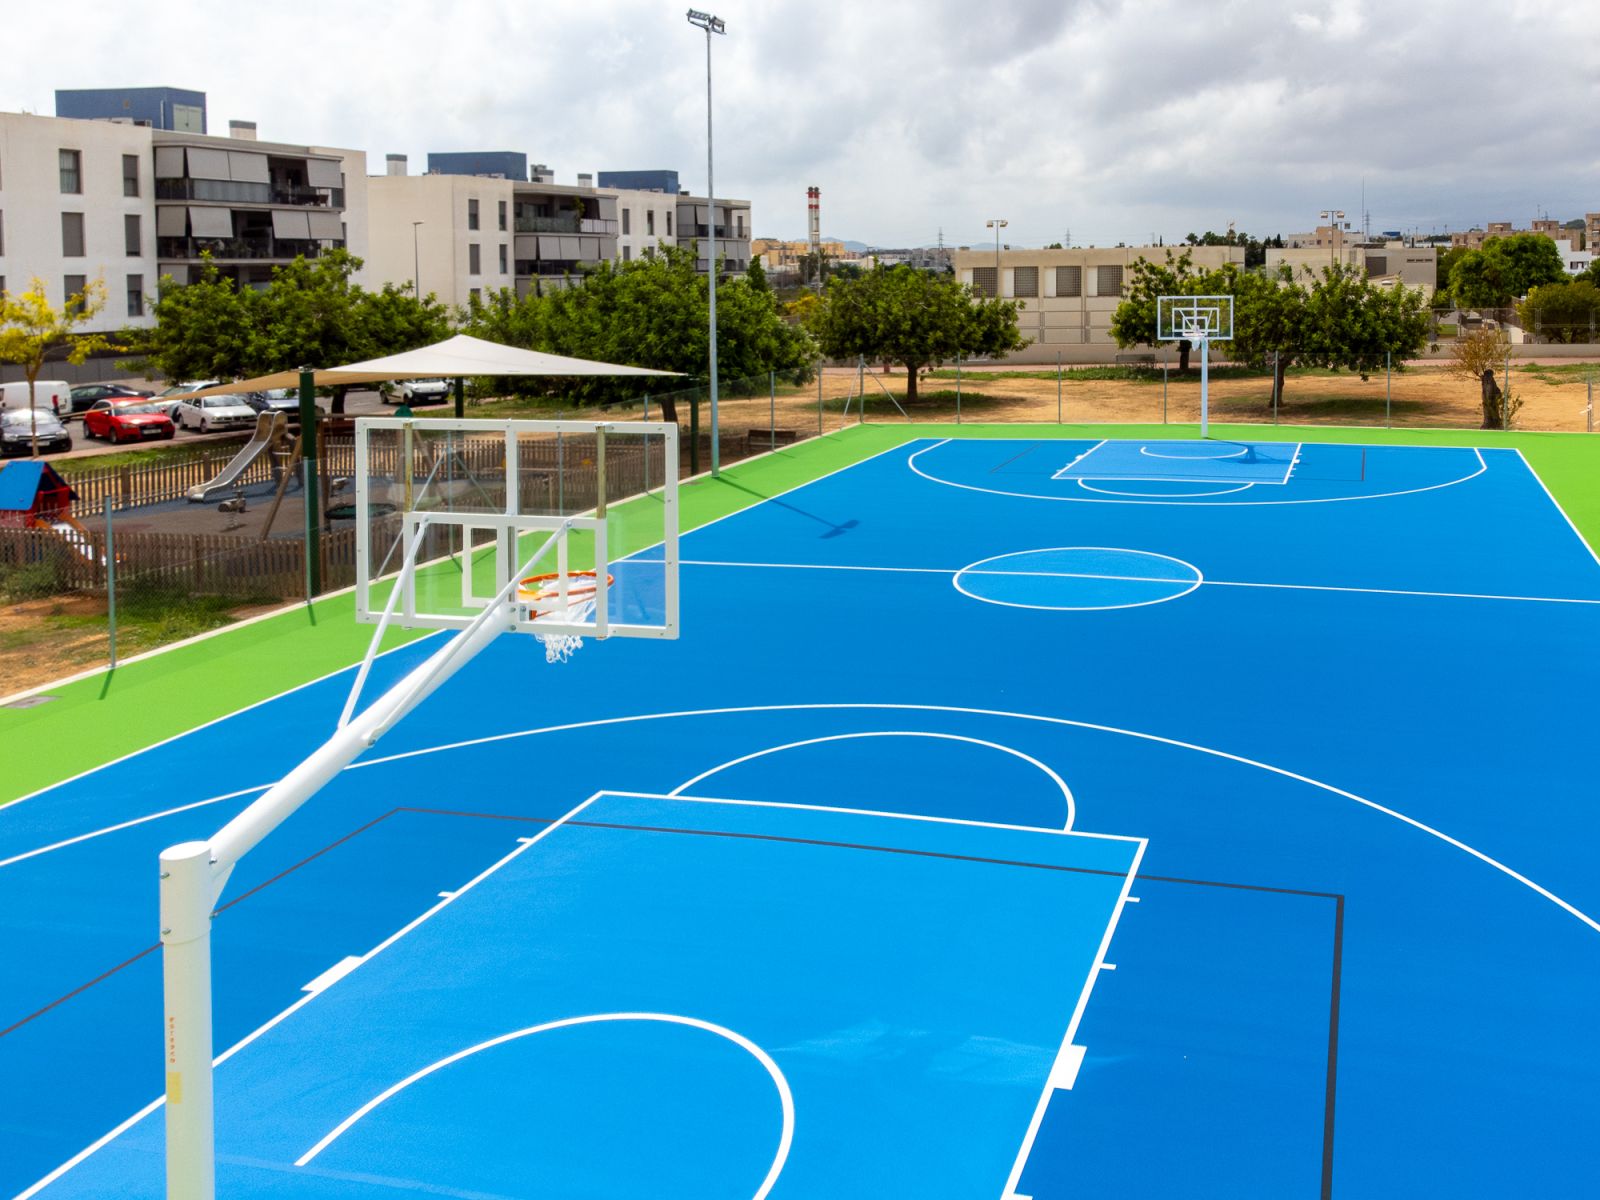 Estrenada la nueva pista de baloncesto de s’Olivera que ofrecerá más espacio para el deporte al colegio y al club deportivo